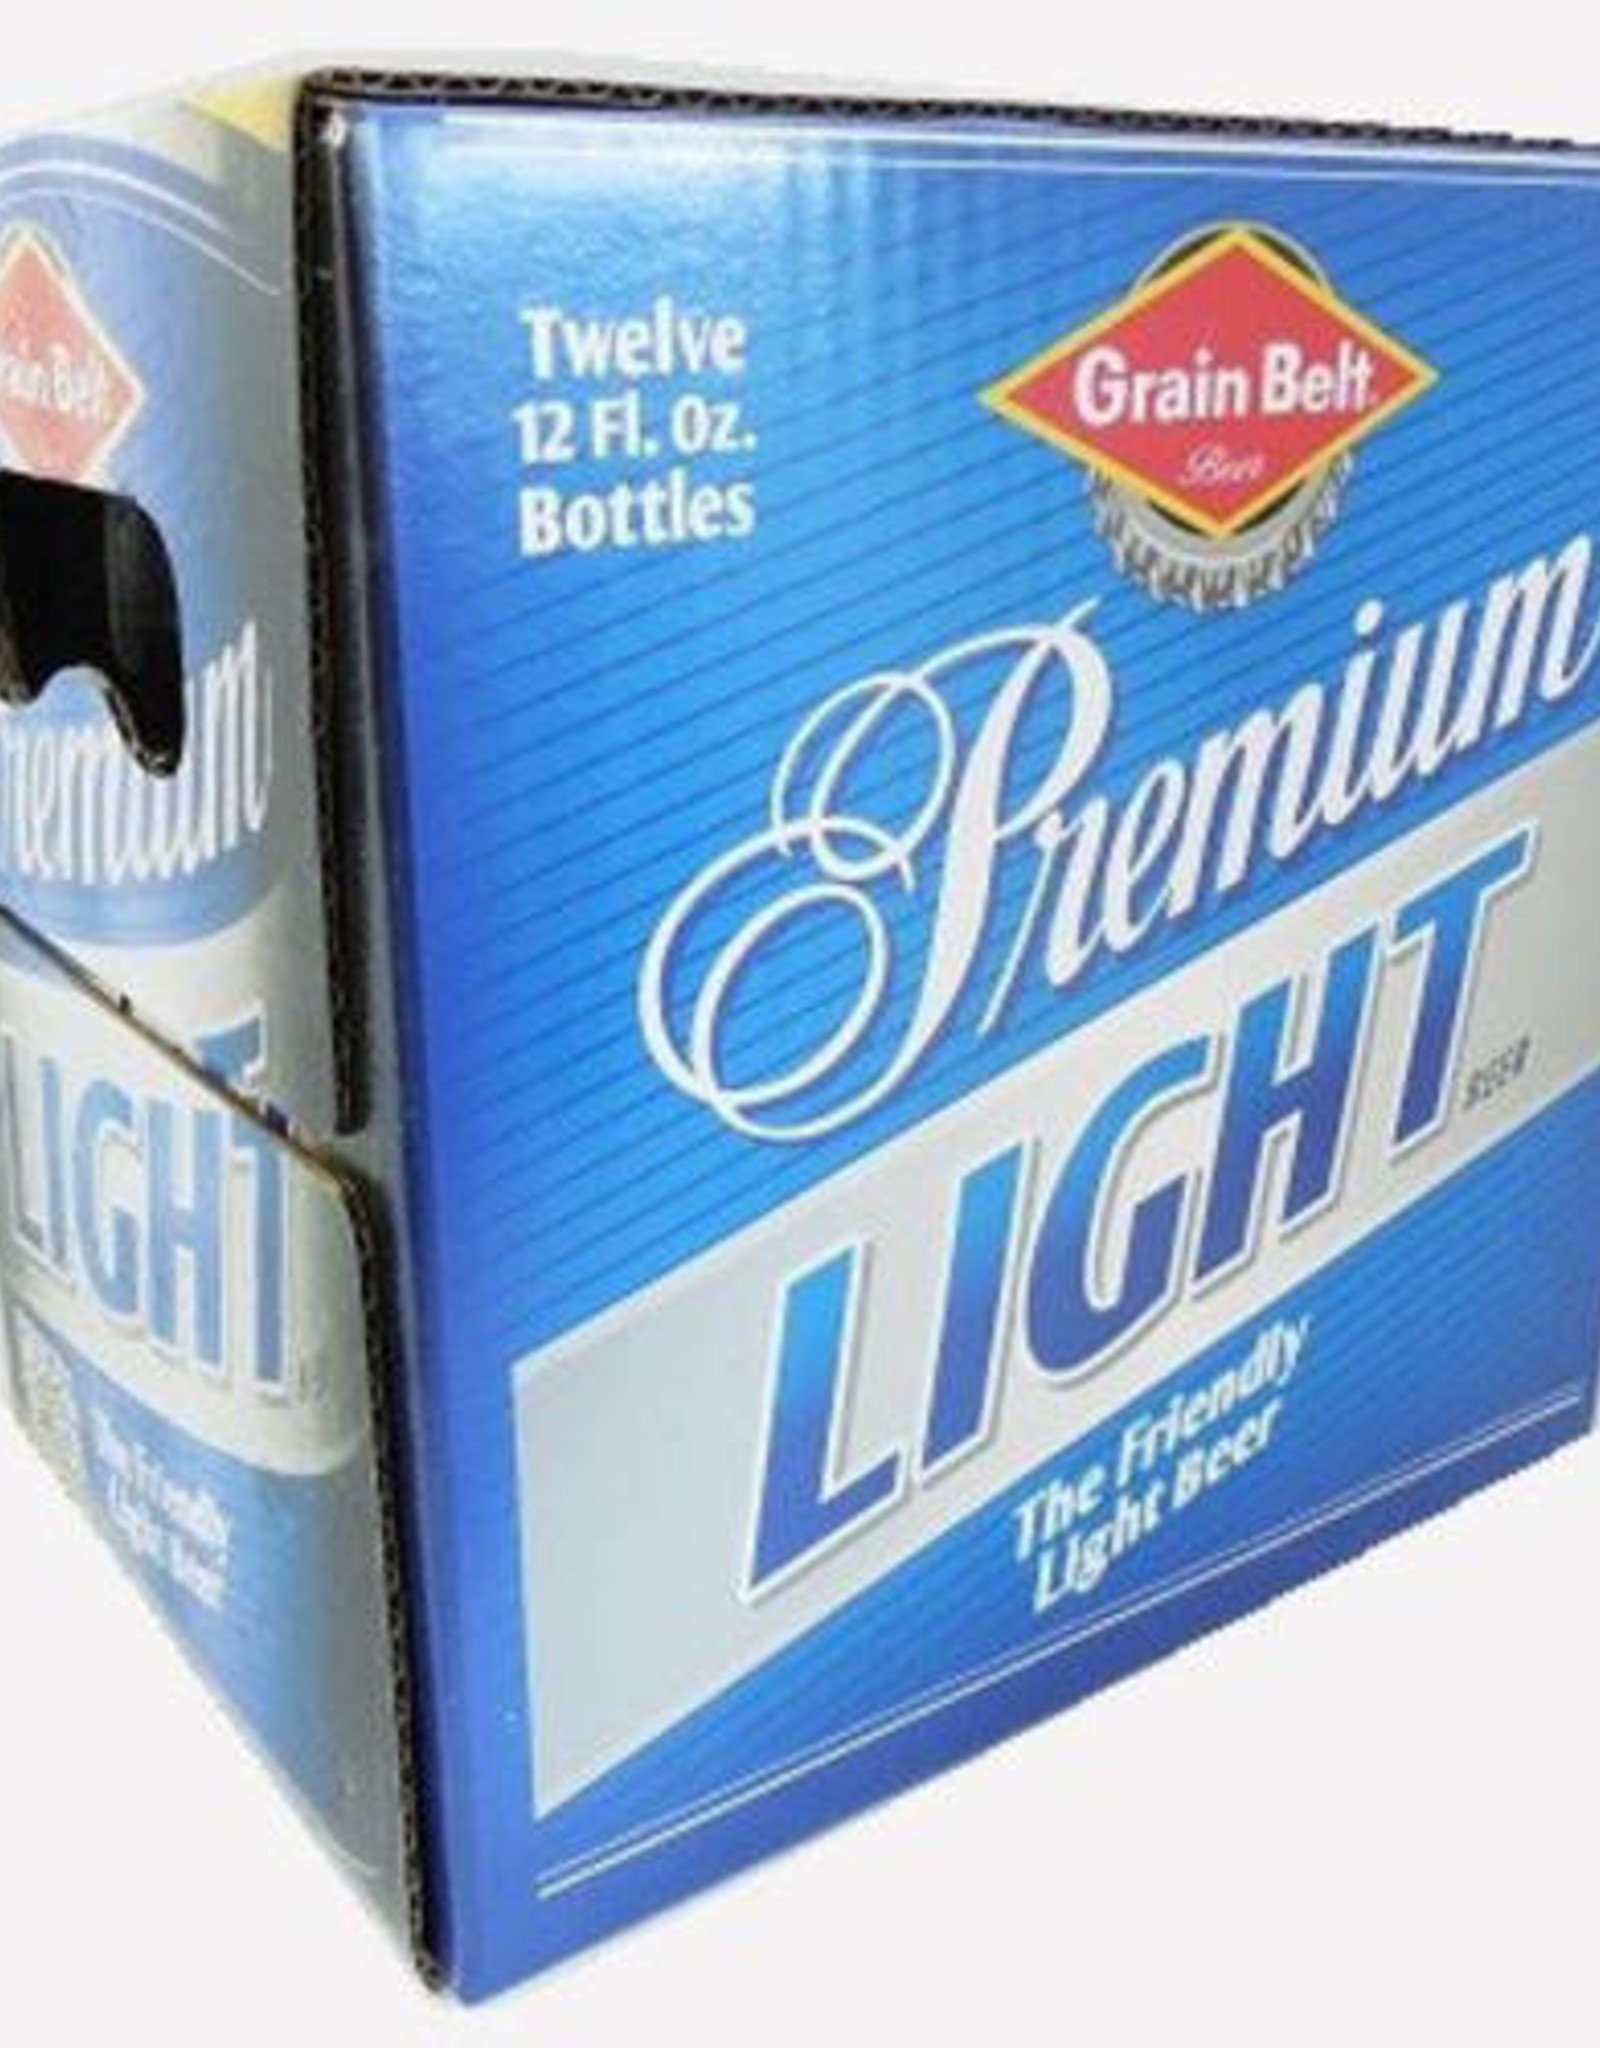 Grain Belt Premium Light 12x12 oz bottles